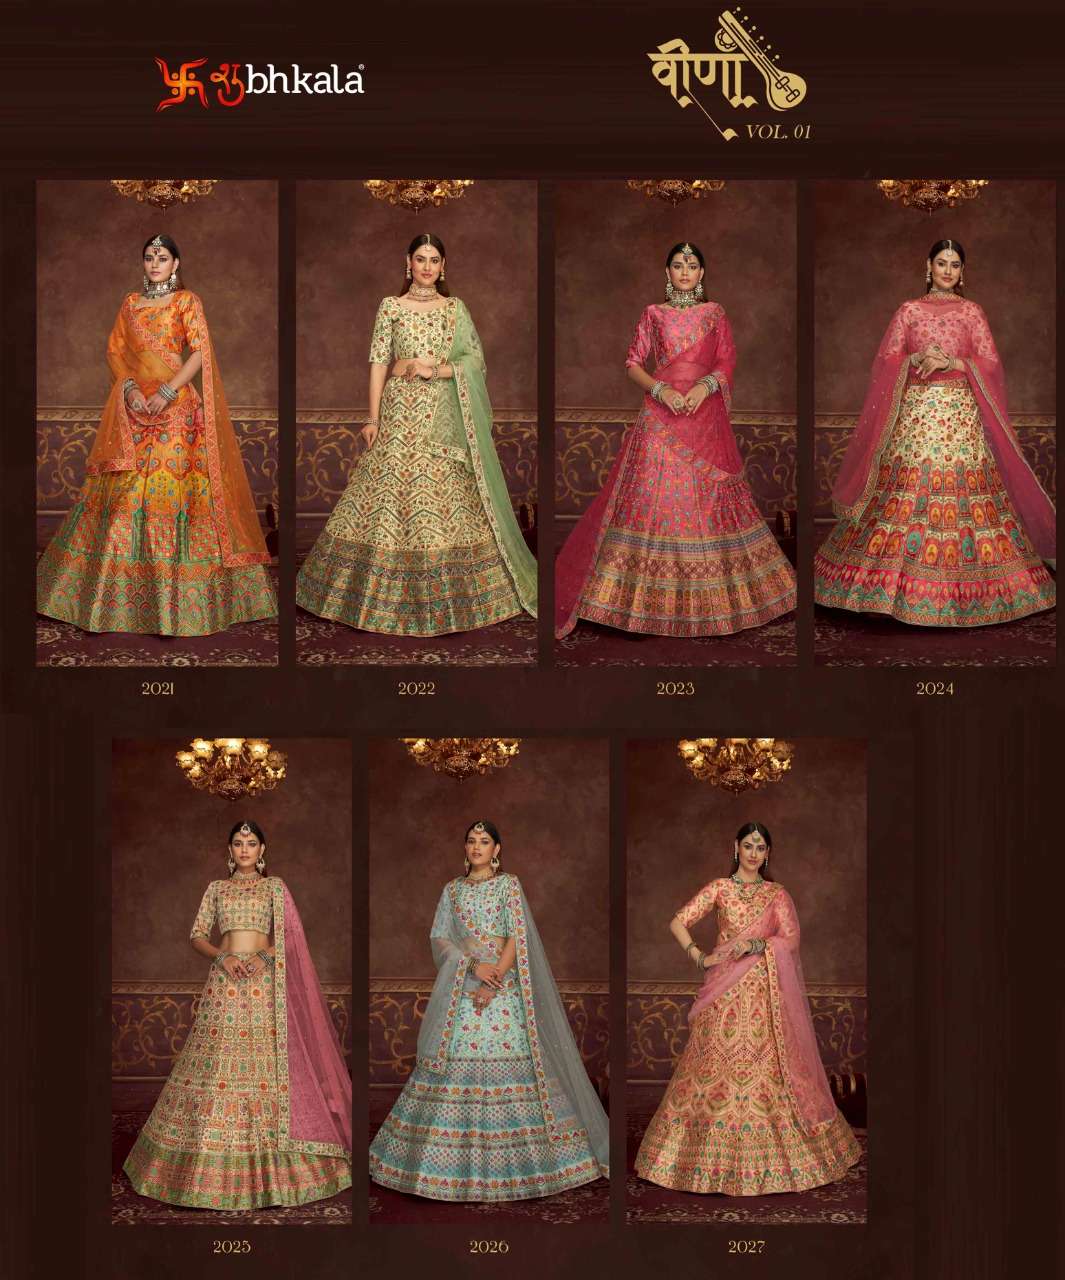 Shubhkala Veena Vol 1 Catalog Exclusive Bridal Wear Semi Stitched Lehenga Choli 